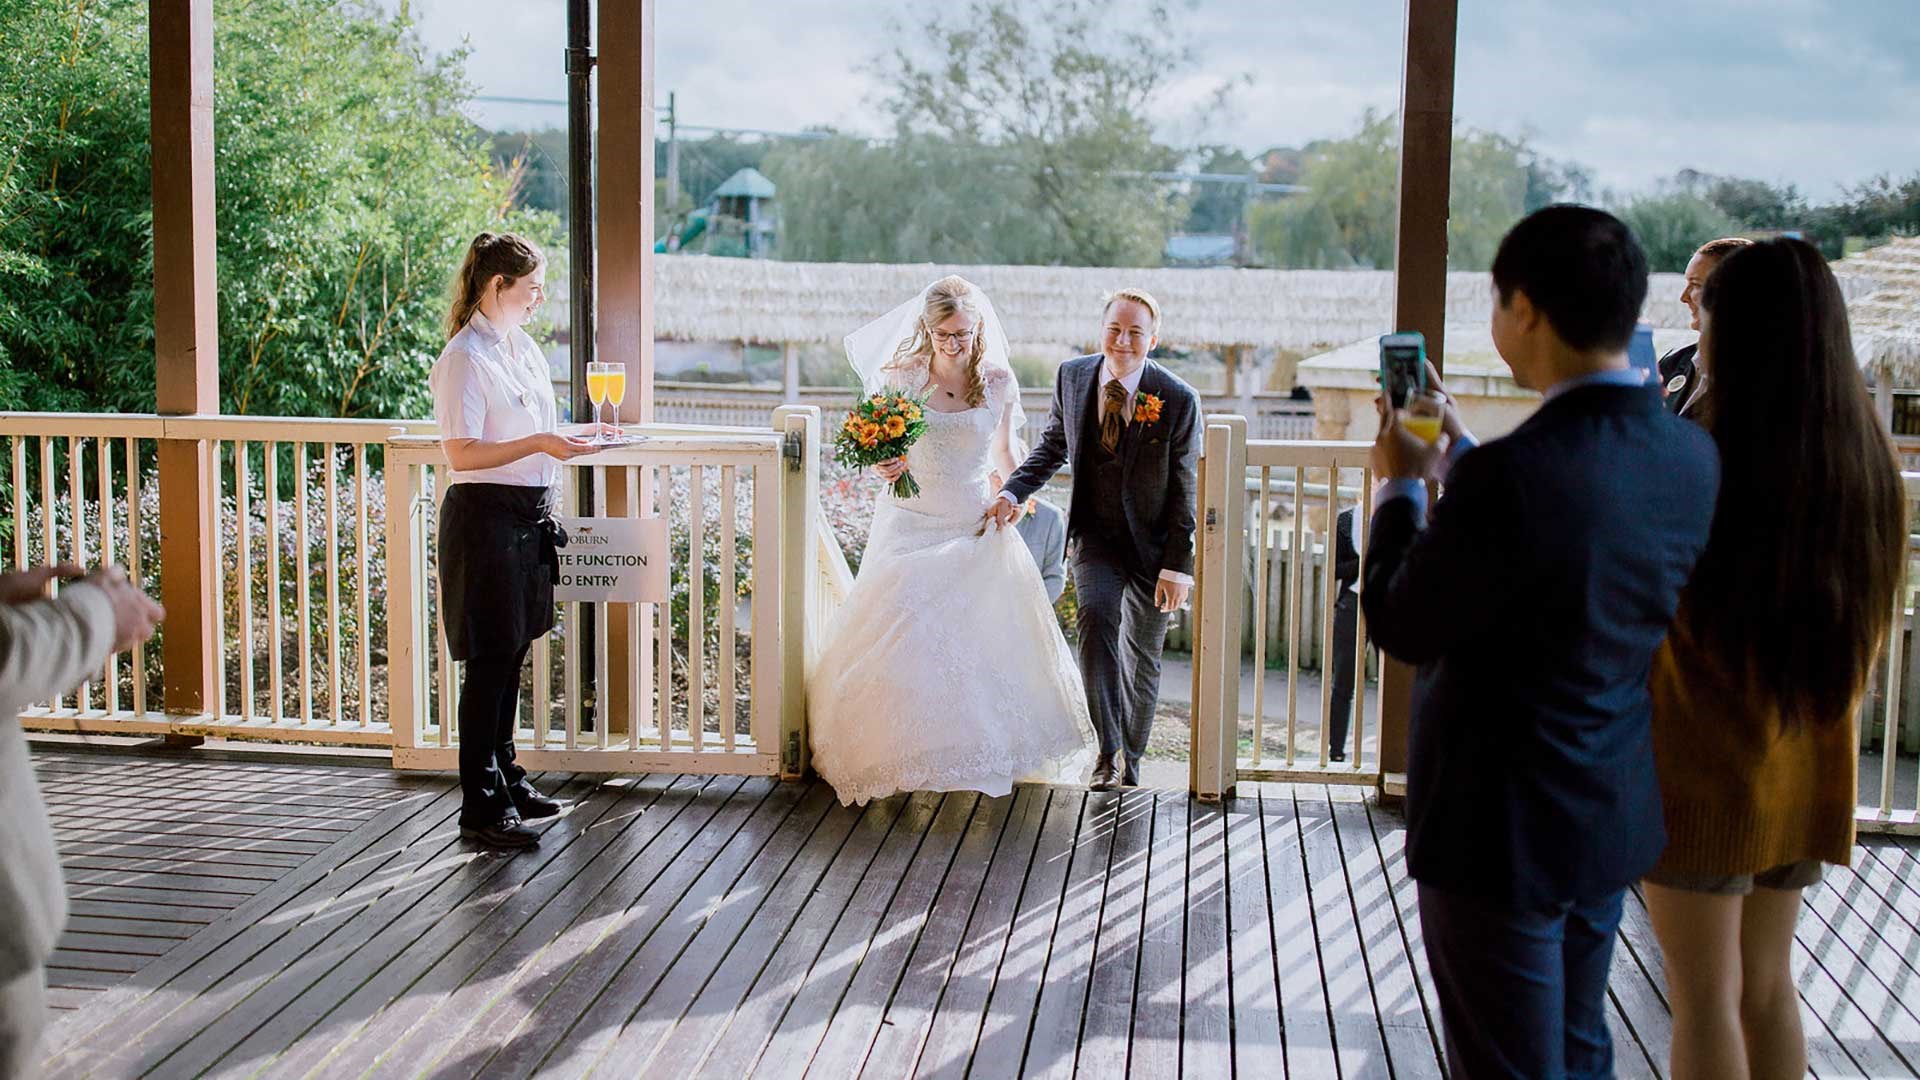 Image of wedding venue veranda entrance web res